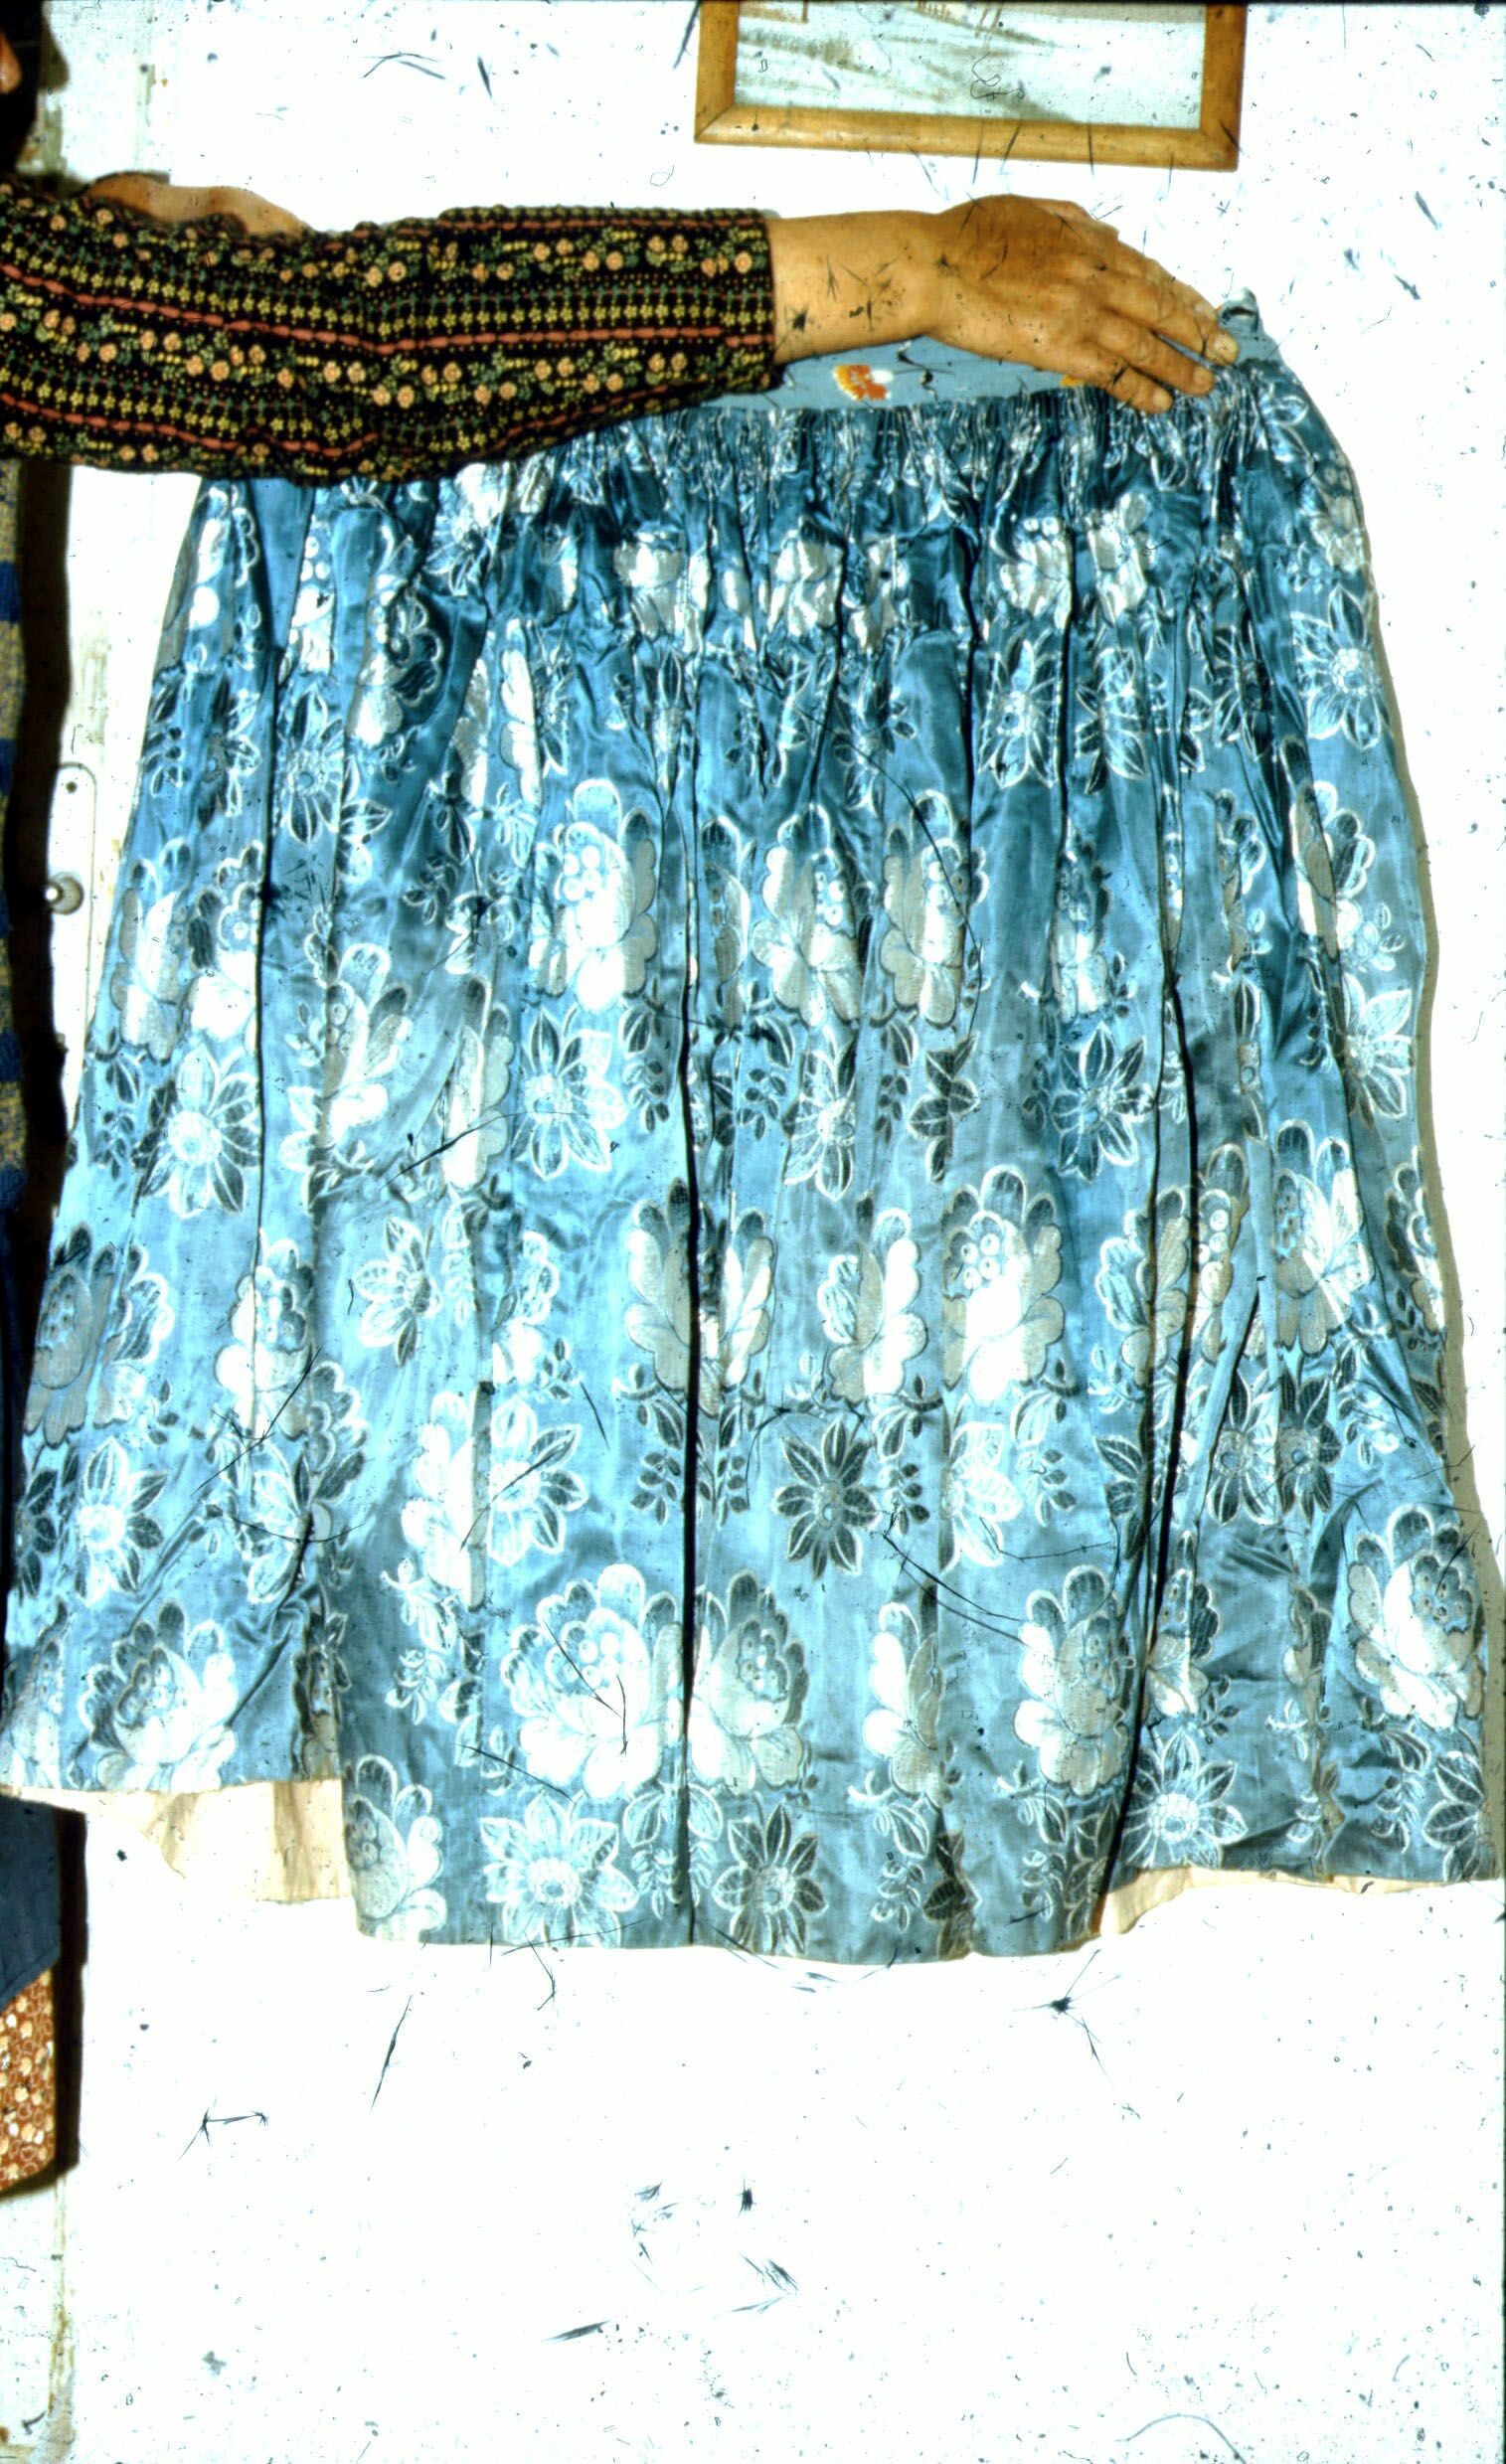 Kék mintás selyemszoknya, Törökkoppány (Rippl-Rónai Múzeum CC BY-NC-ND)